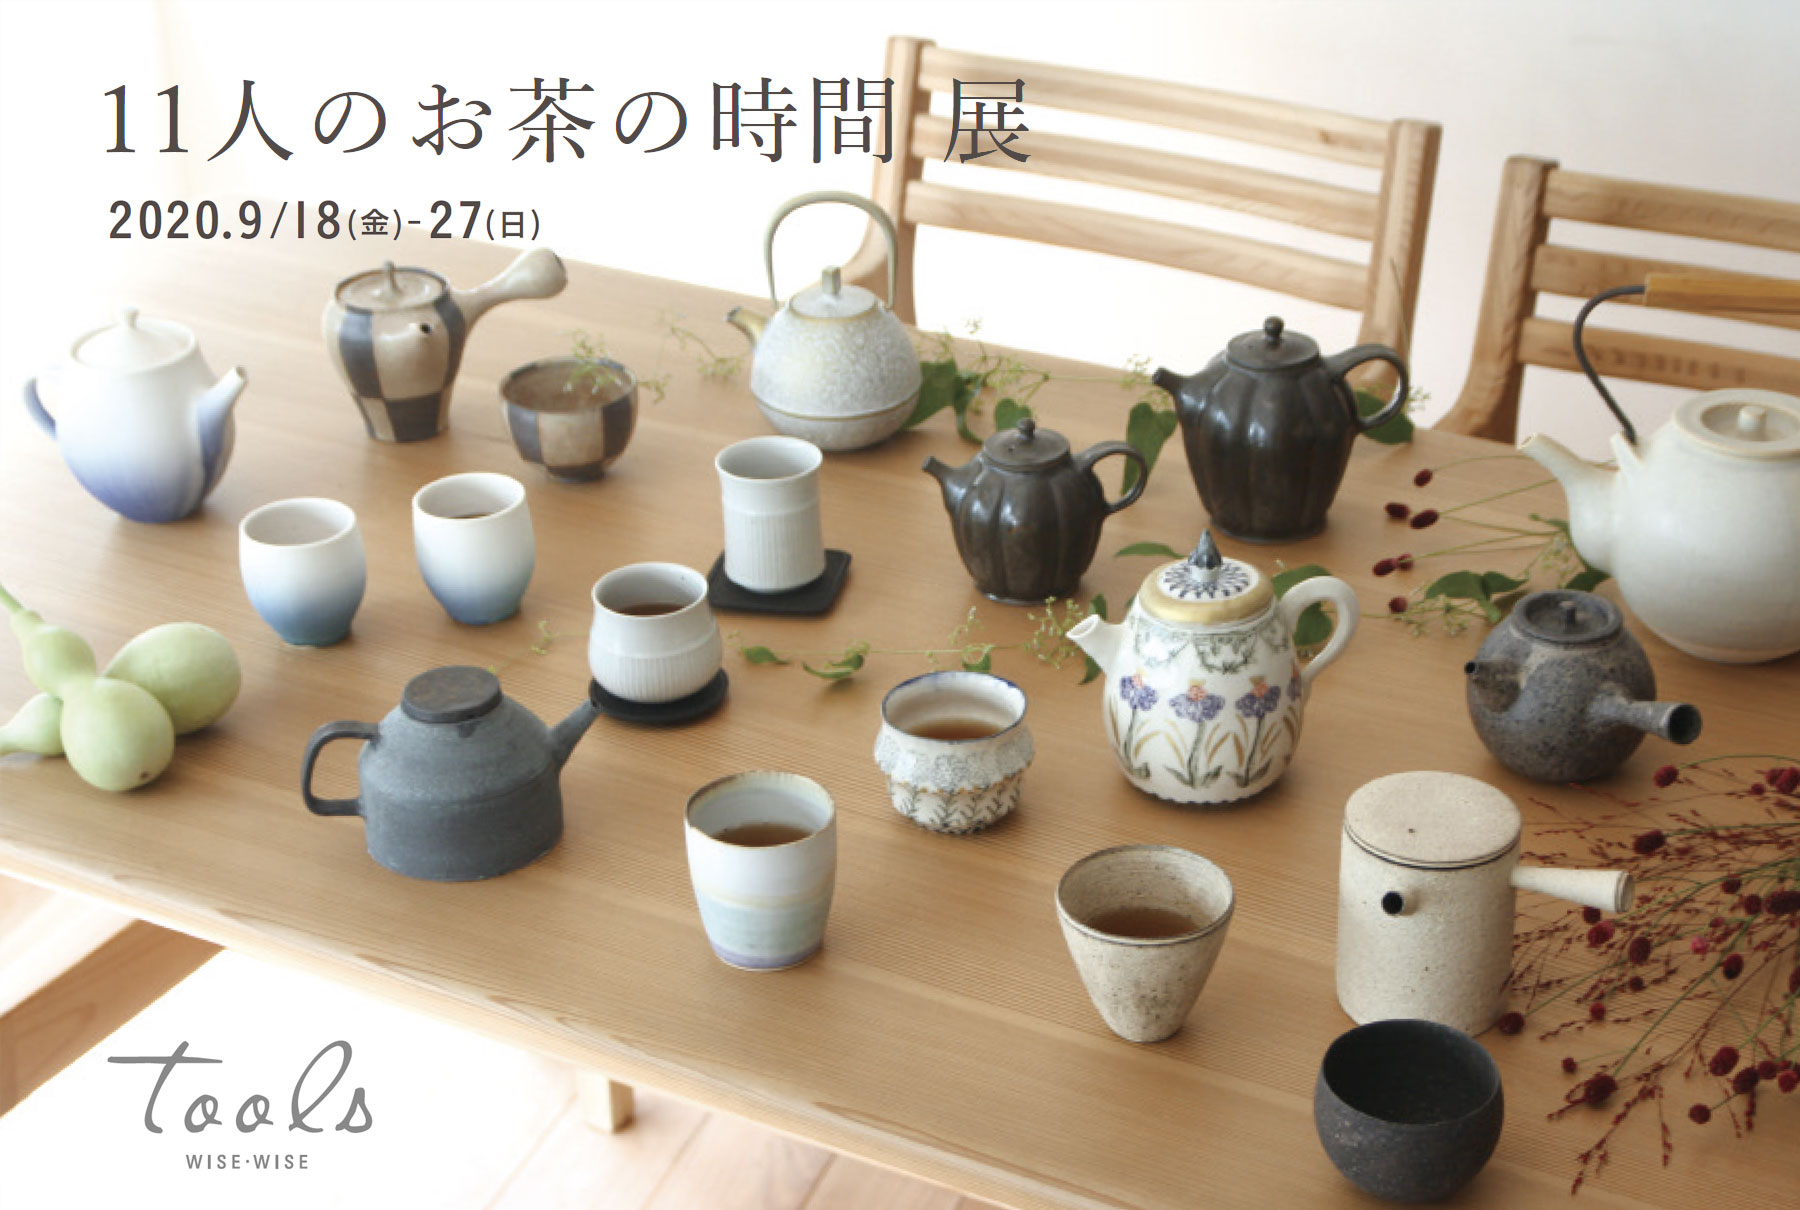 11人のお茶の時間 展 陶芸作家 岩崎龍二 公式サイト